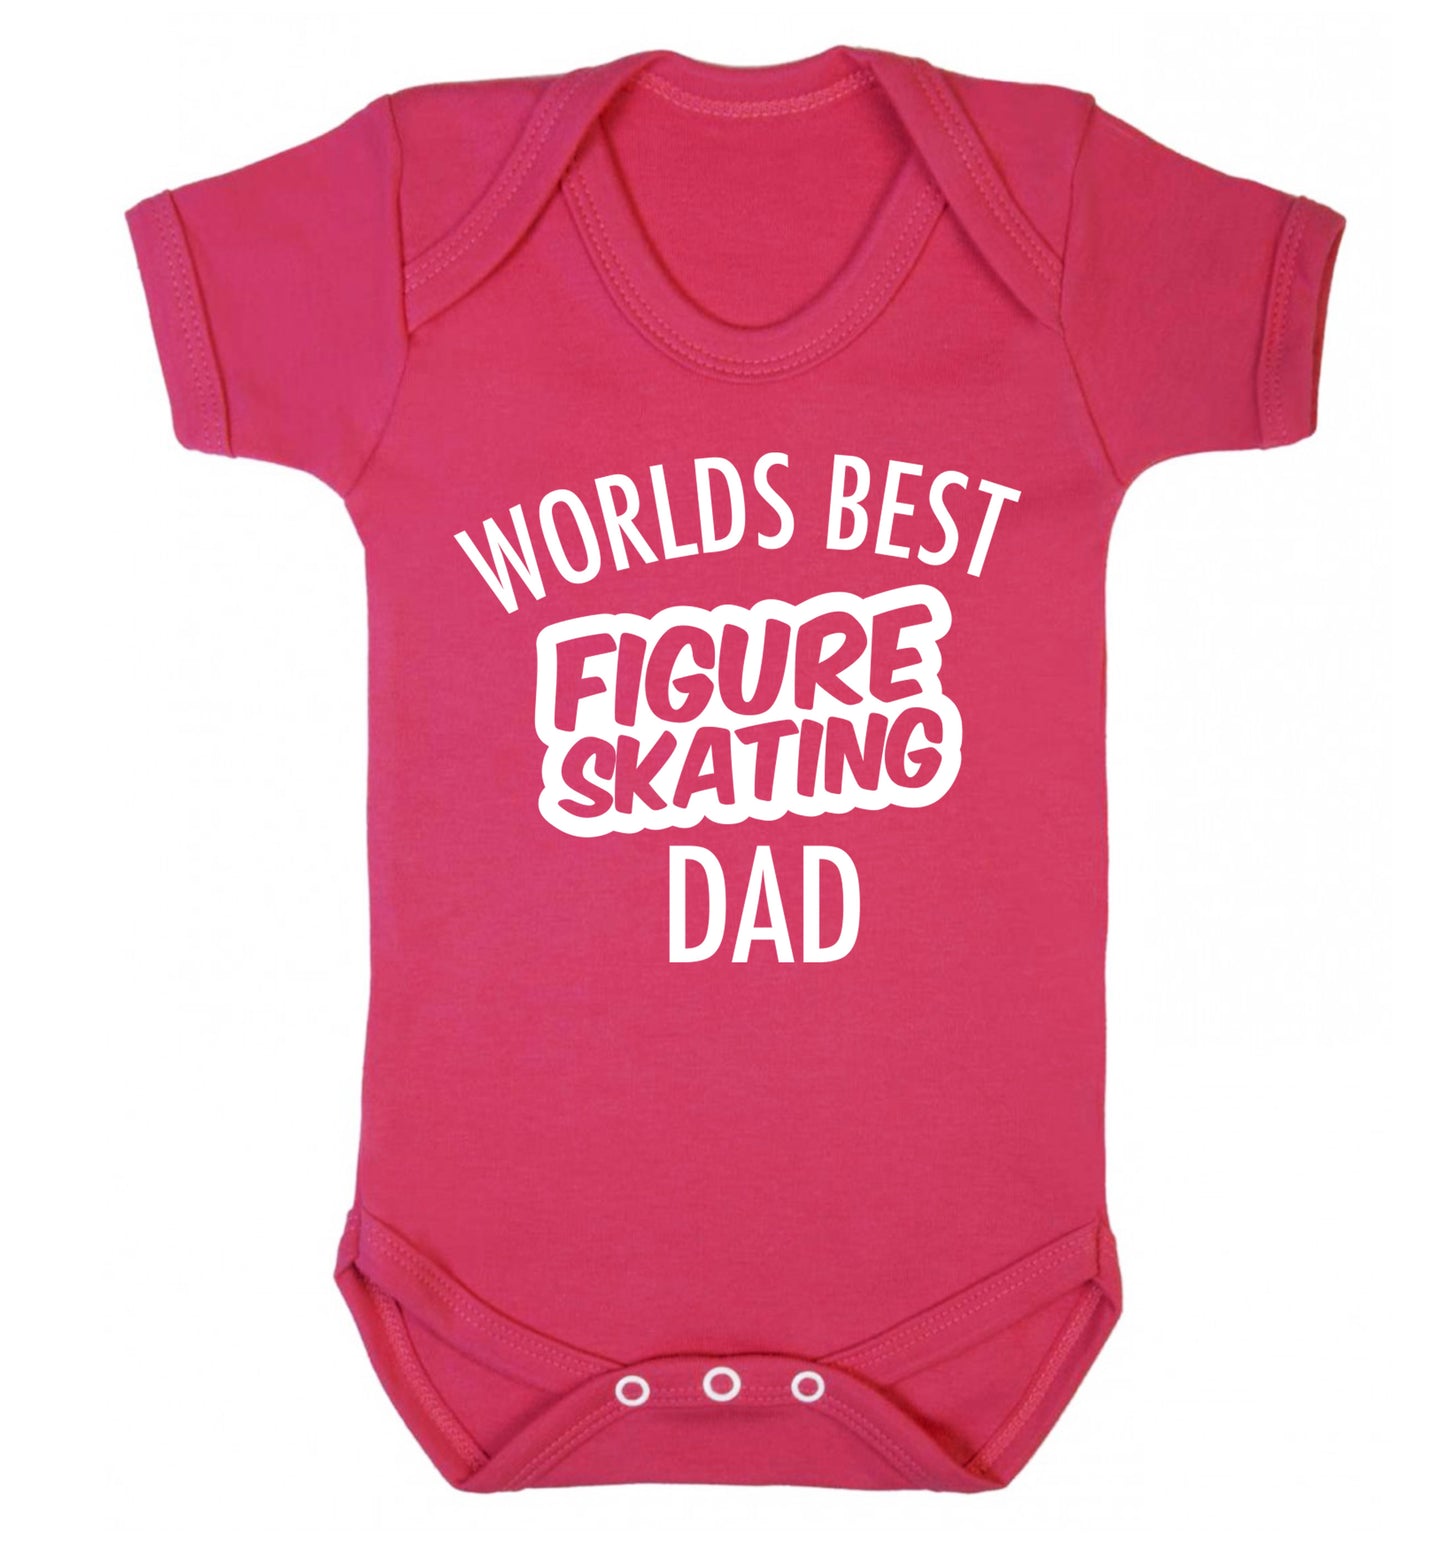 Worlds best figure skating dad Baby Vest dark pink 18-24 months